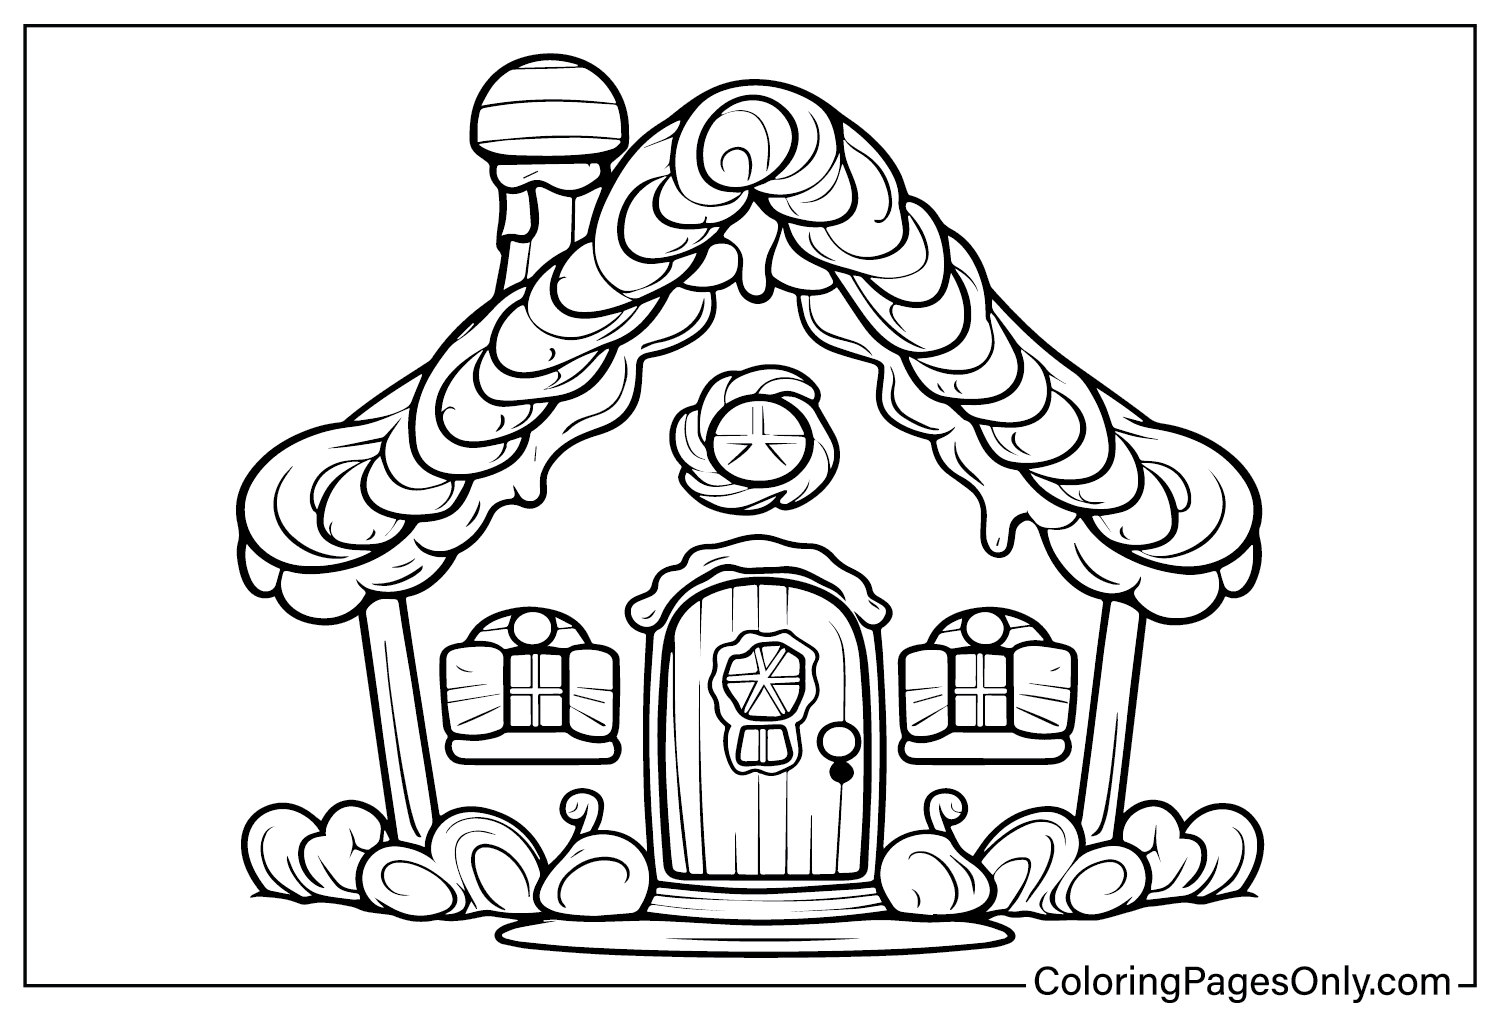 Раскраска Пряничный домик из мультфильма "Пряничный домик"